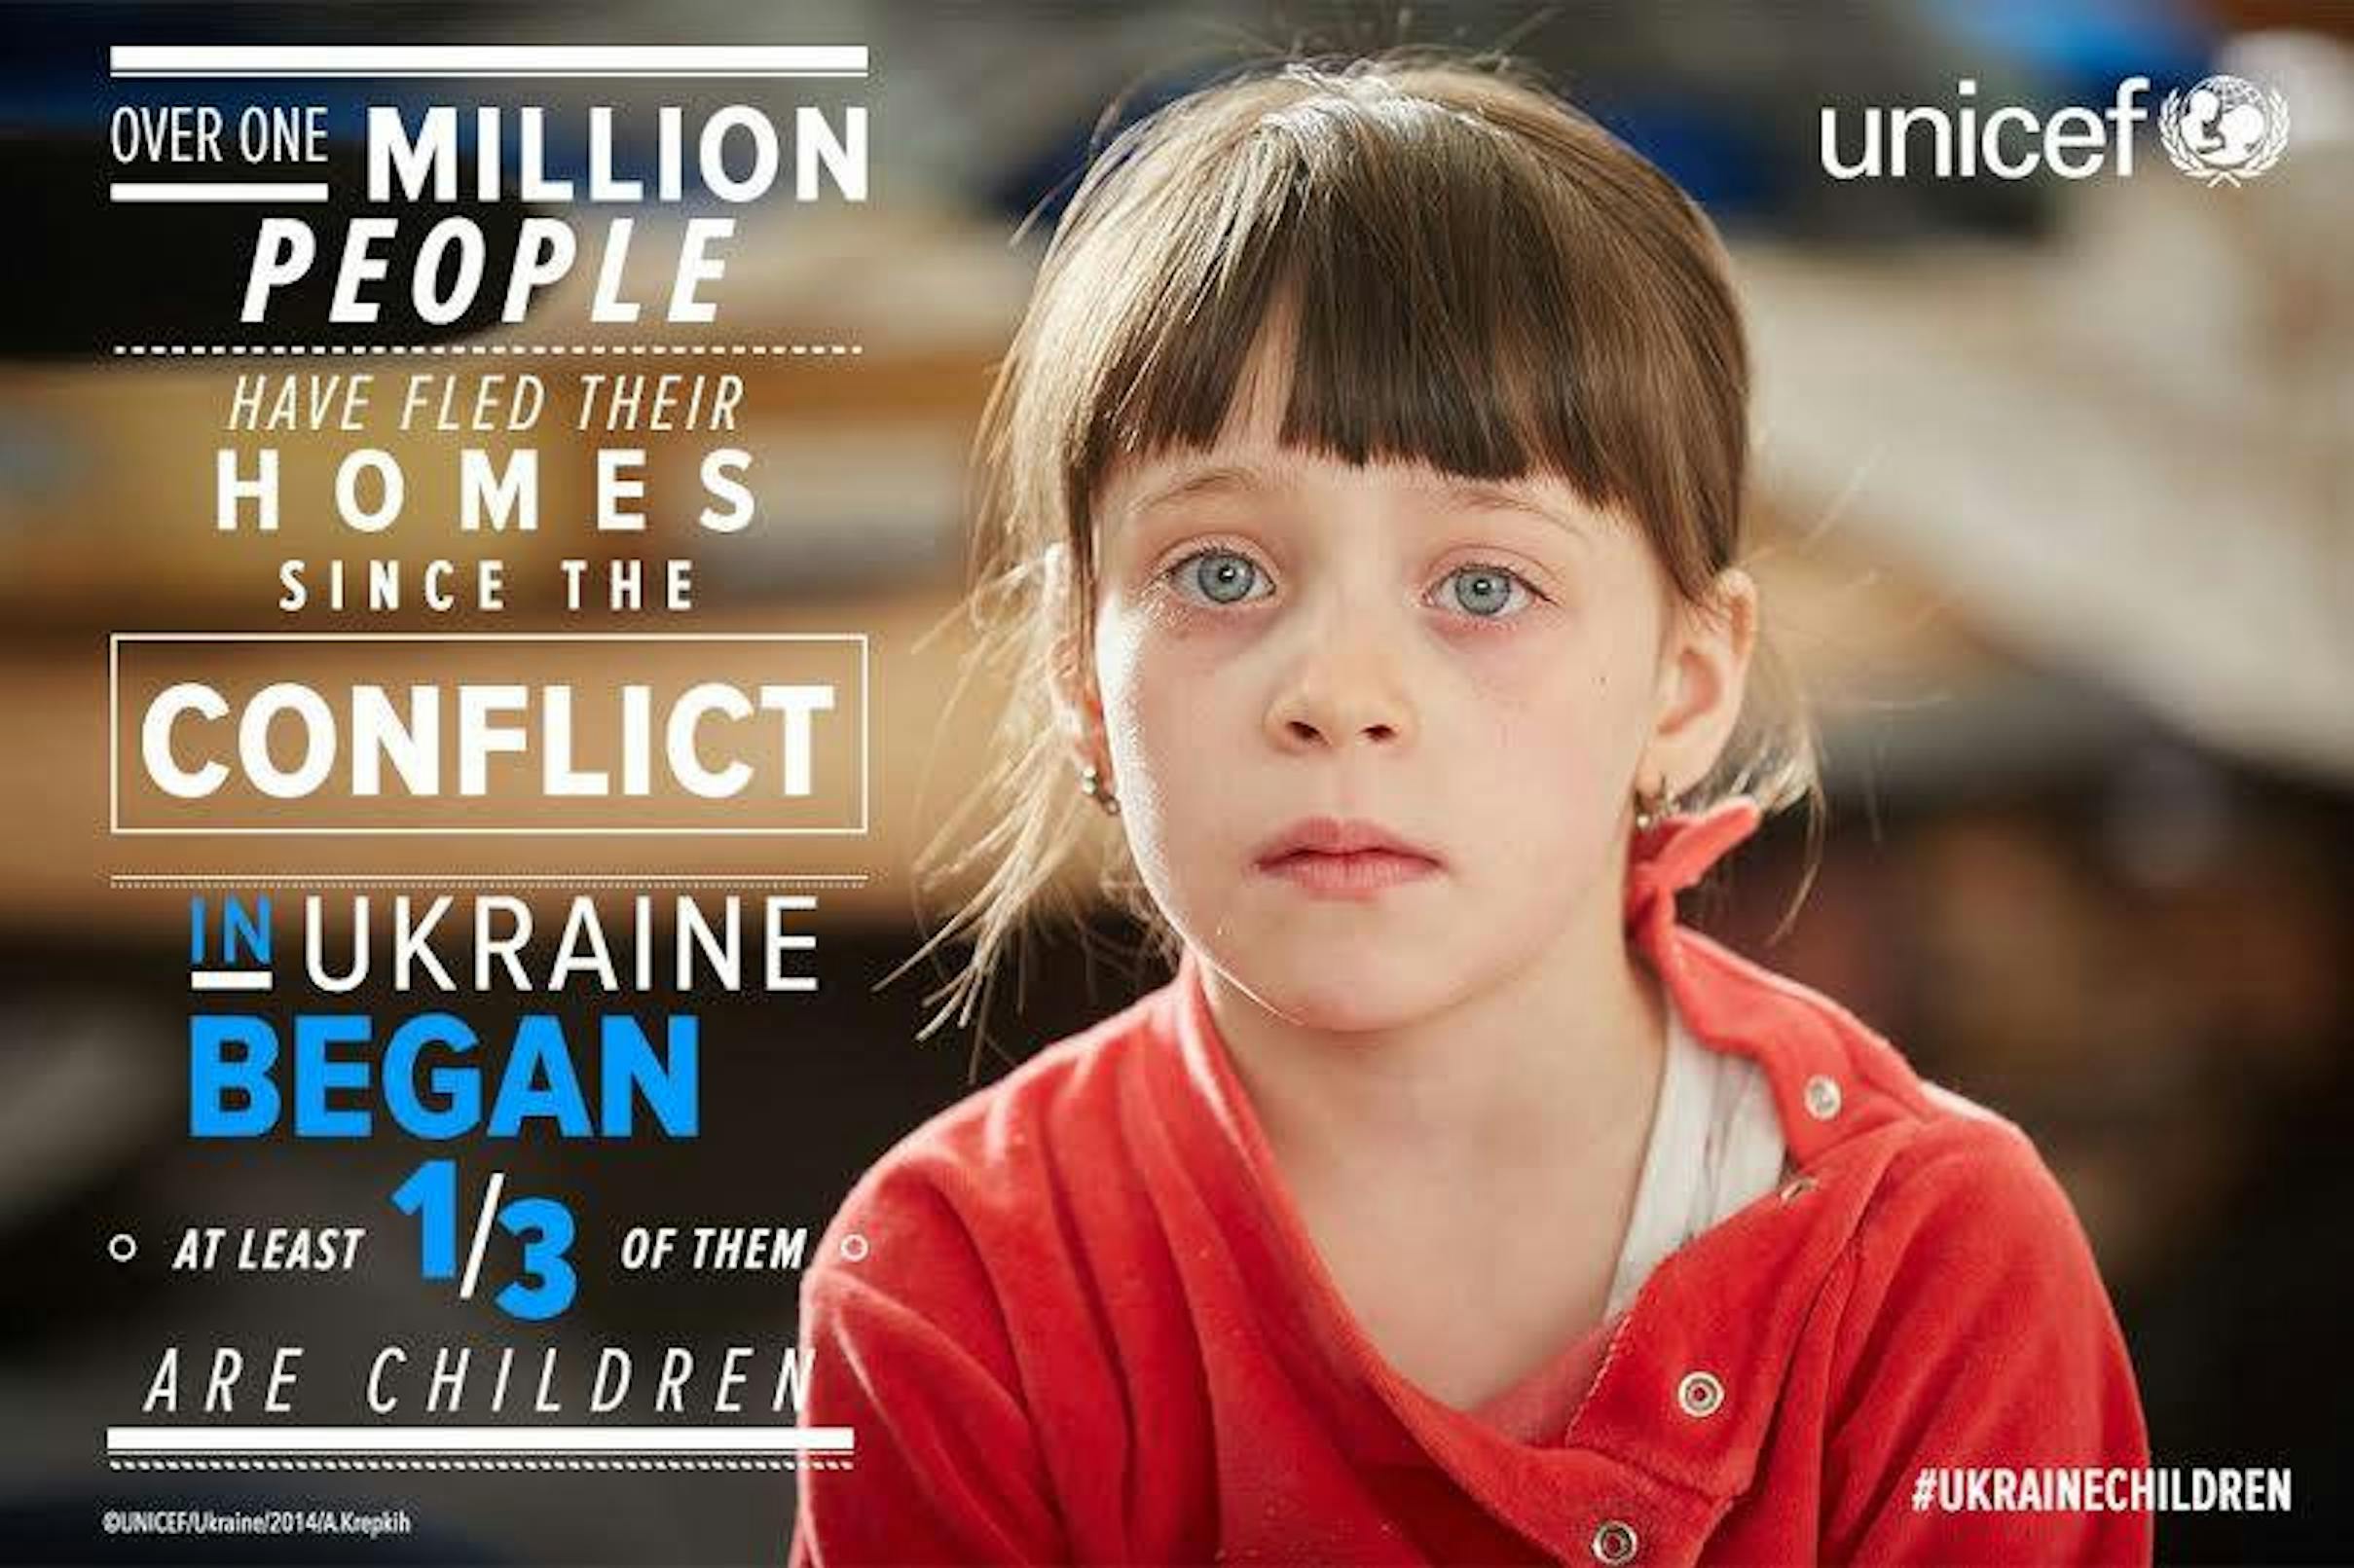 In Ucraina, un milione di sfollati ha dovuto abbandonare la propria casa per il conflitto, un terzo degli sfollati sono minori